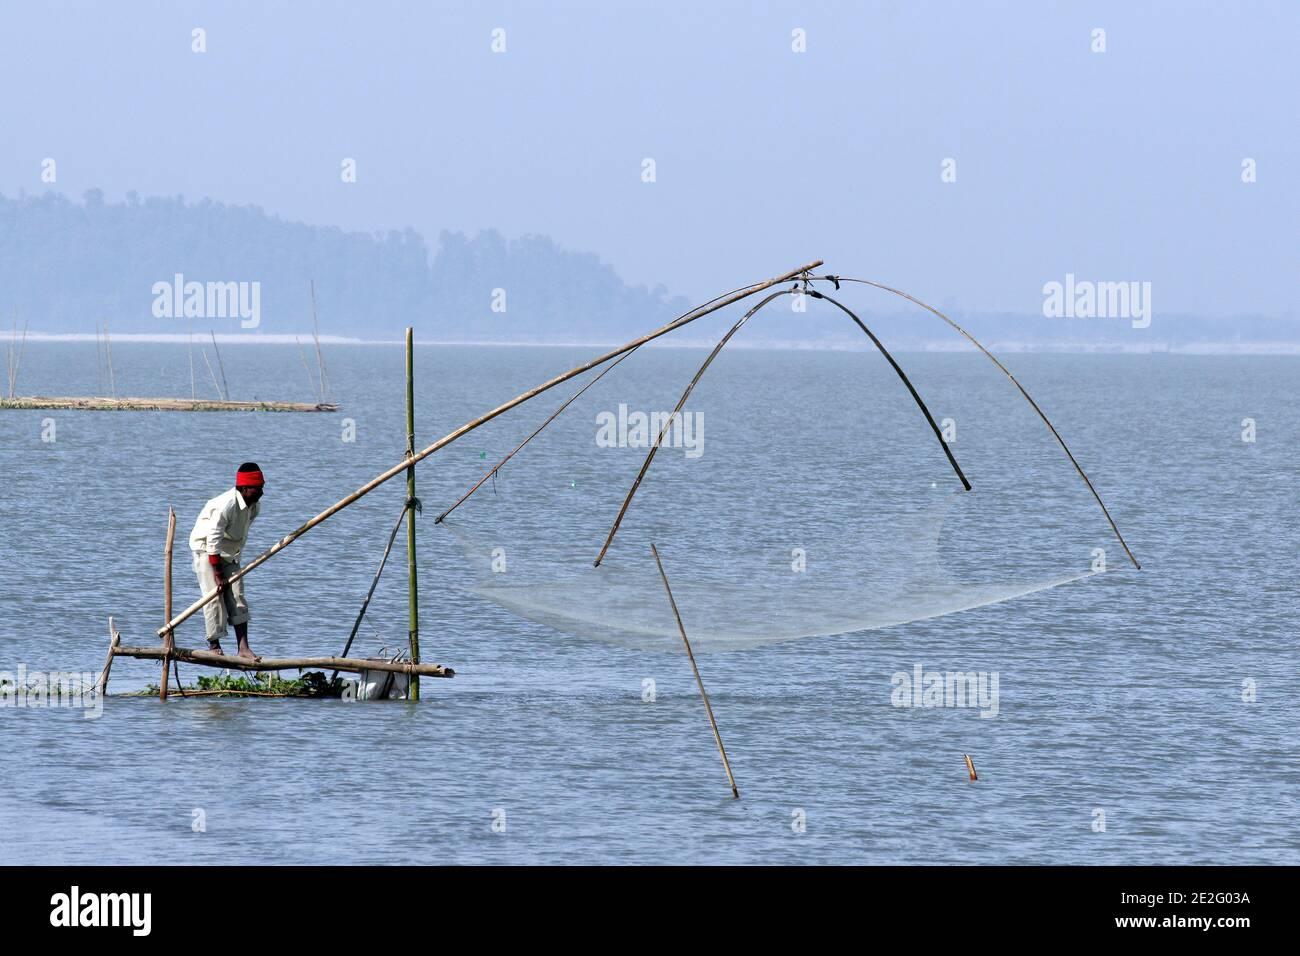 https://c8.alamy.com/comp/2E2G03A/fisherman-with-net-on-the-brahmaputra-river-assam-india-2E2G03A.jpg